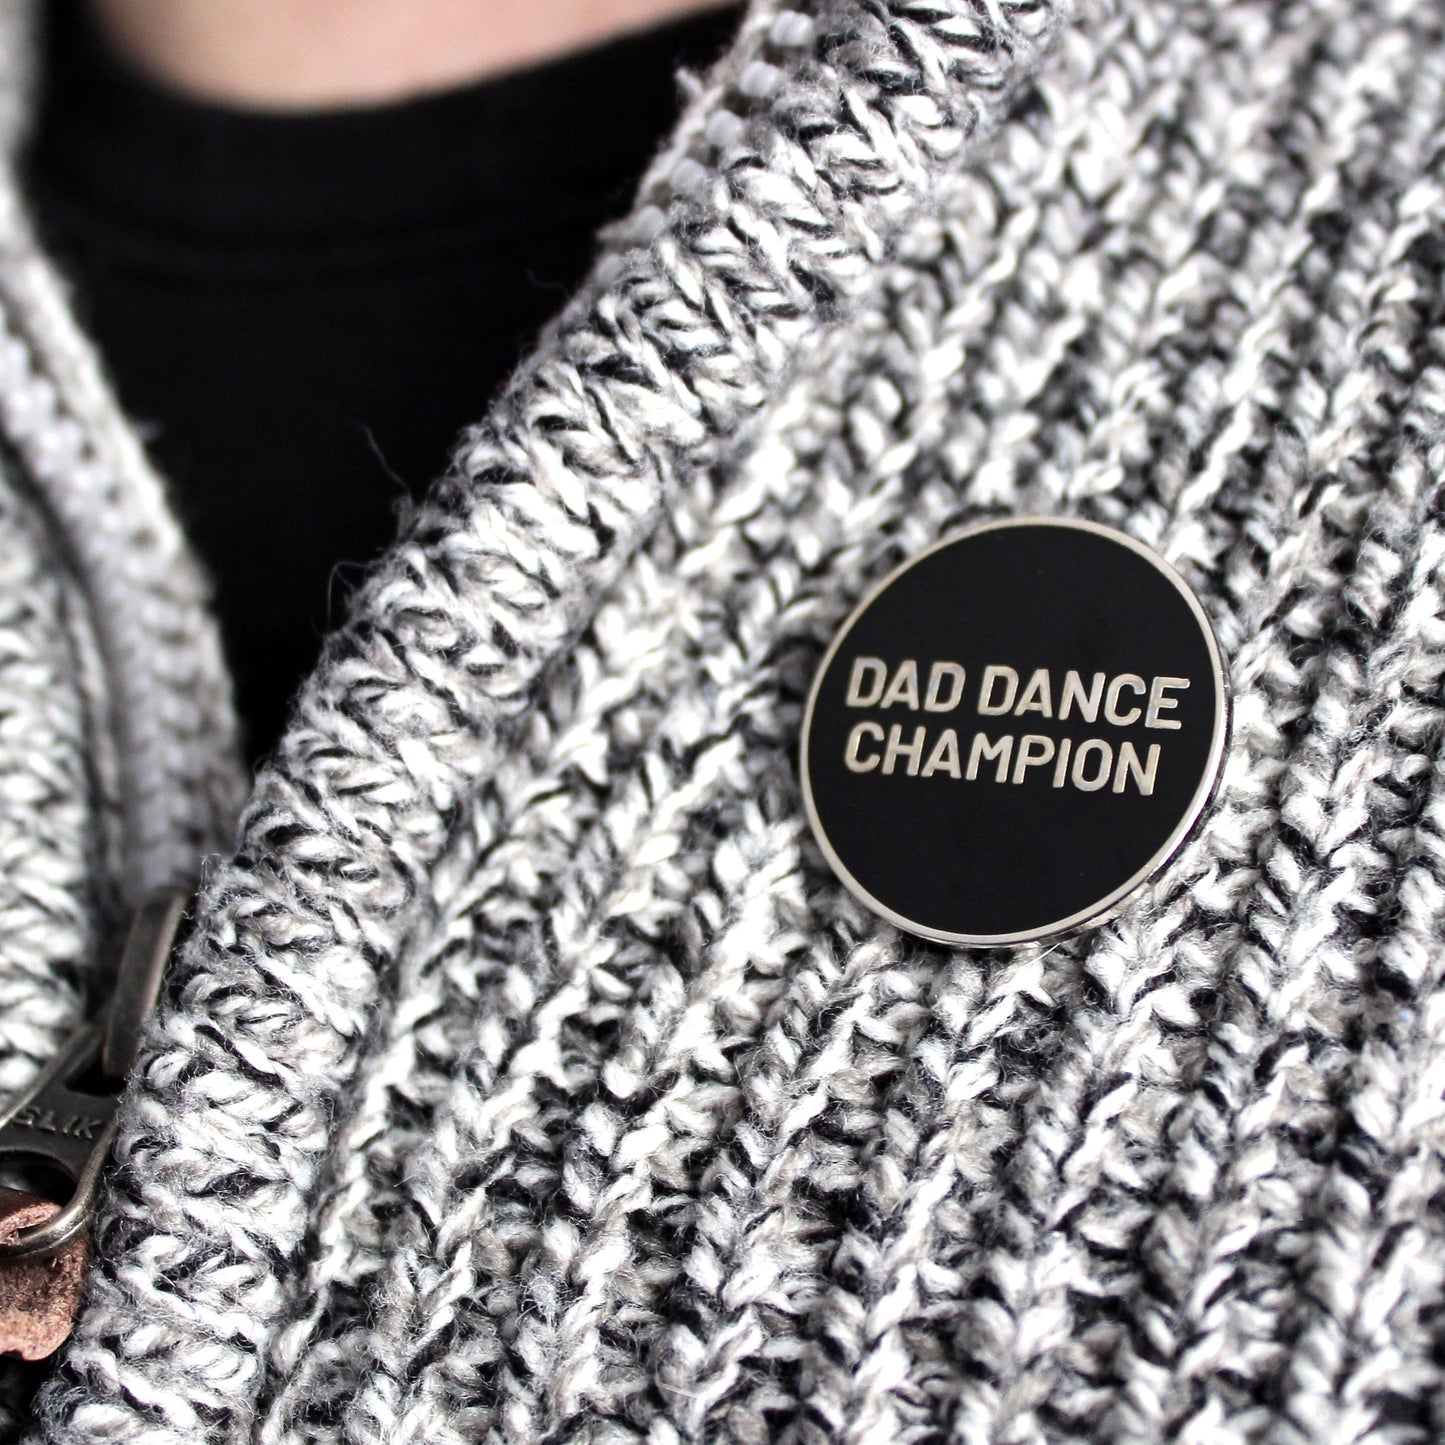 Dad dance champion enamel pin badge